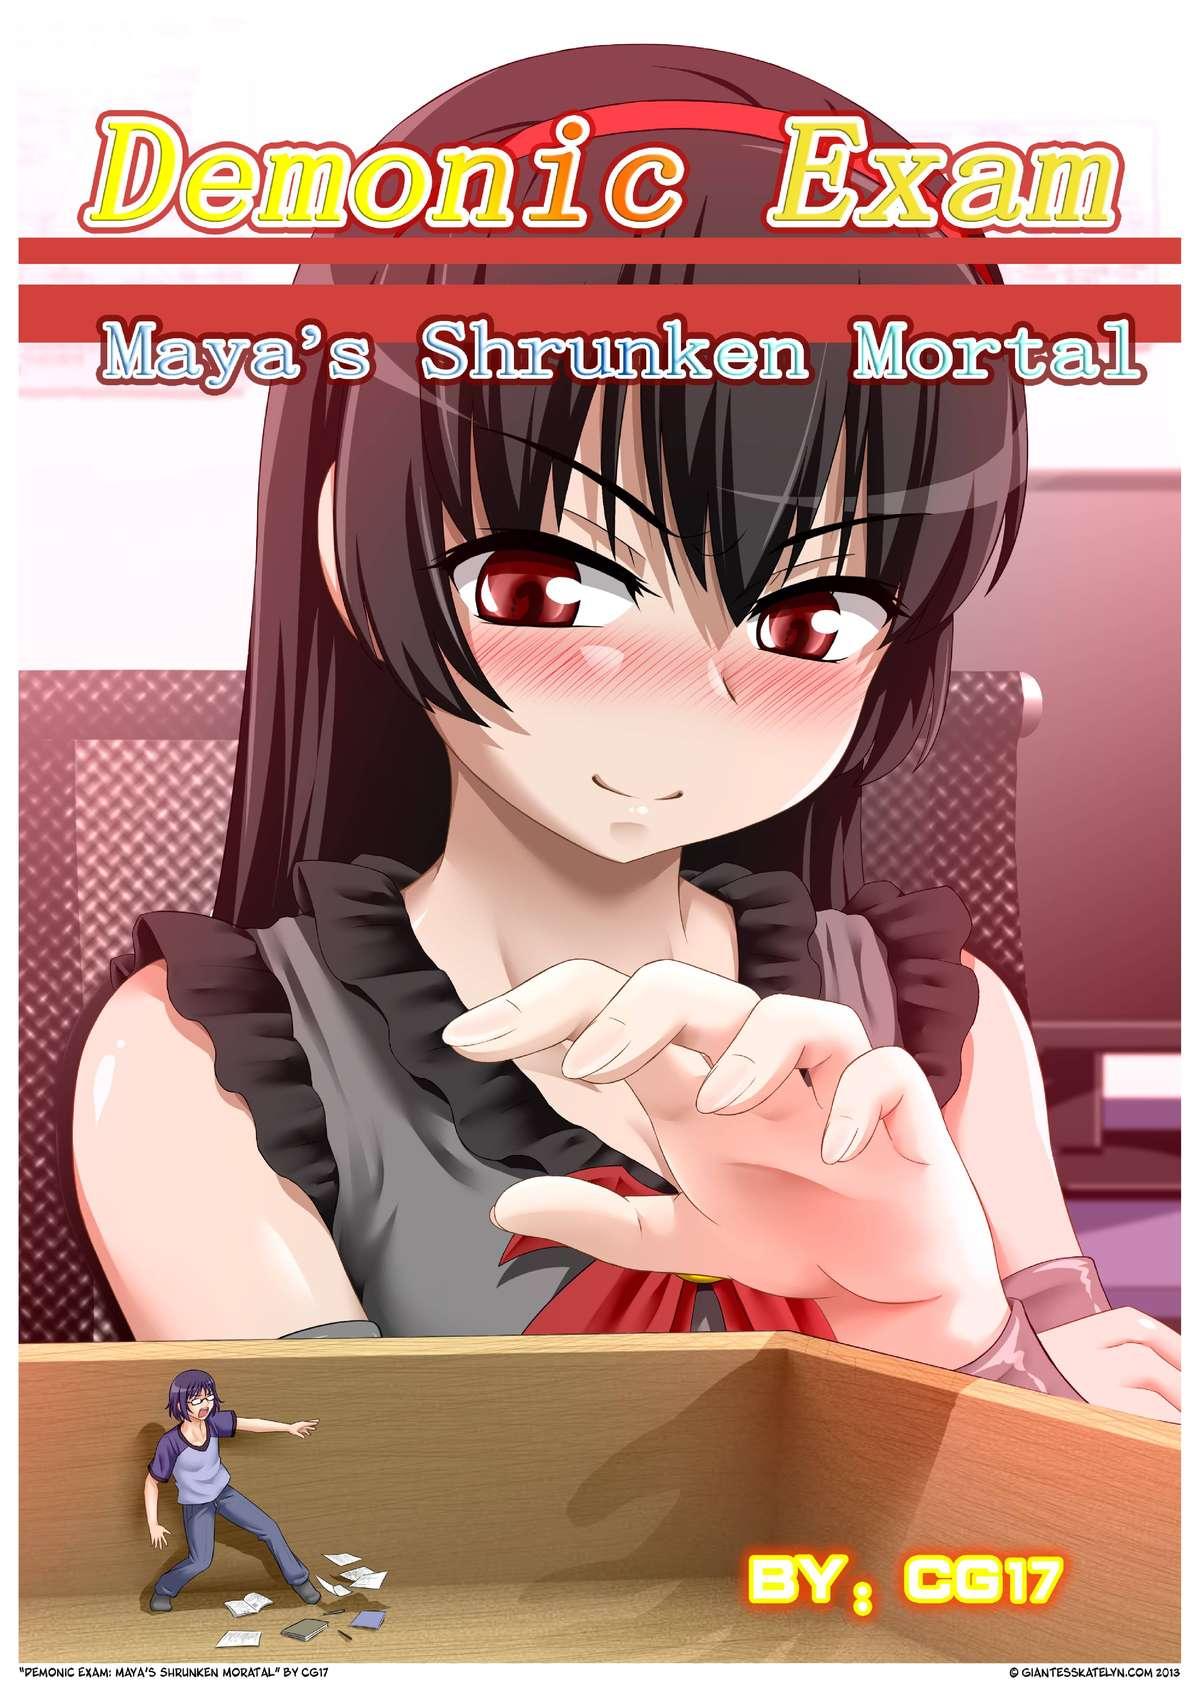 Demonic exam 1: Maya's Shrunken Mortal 0